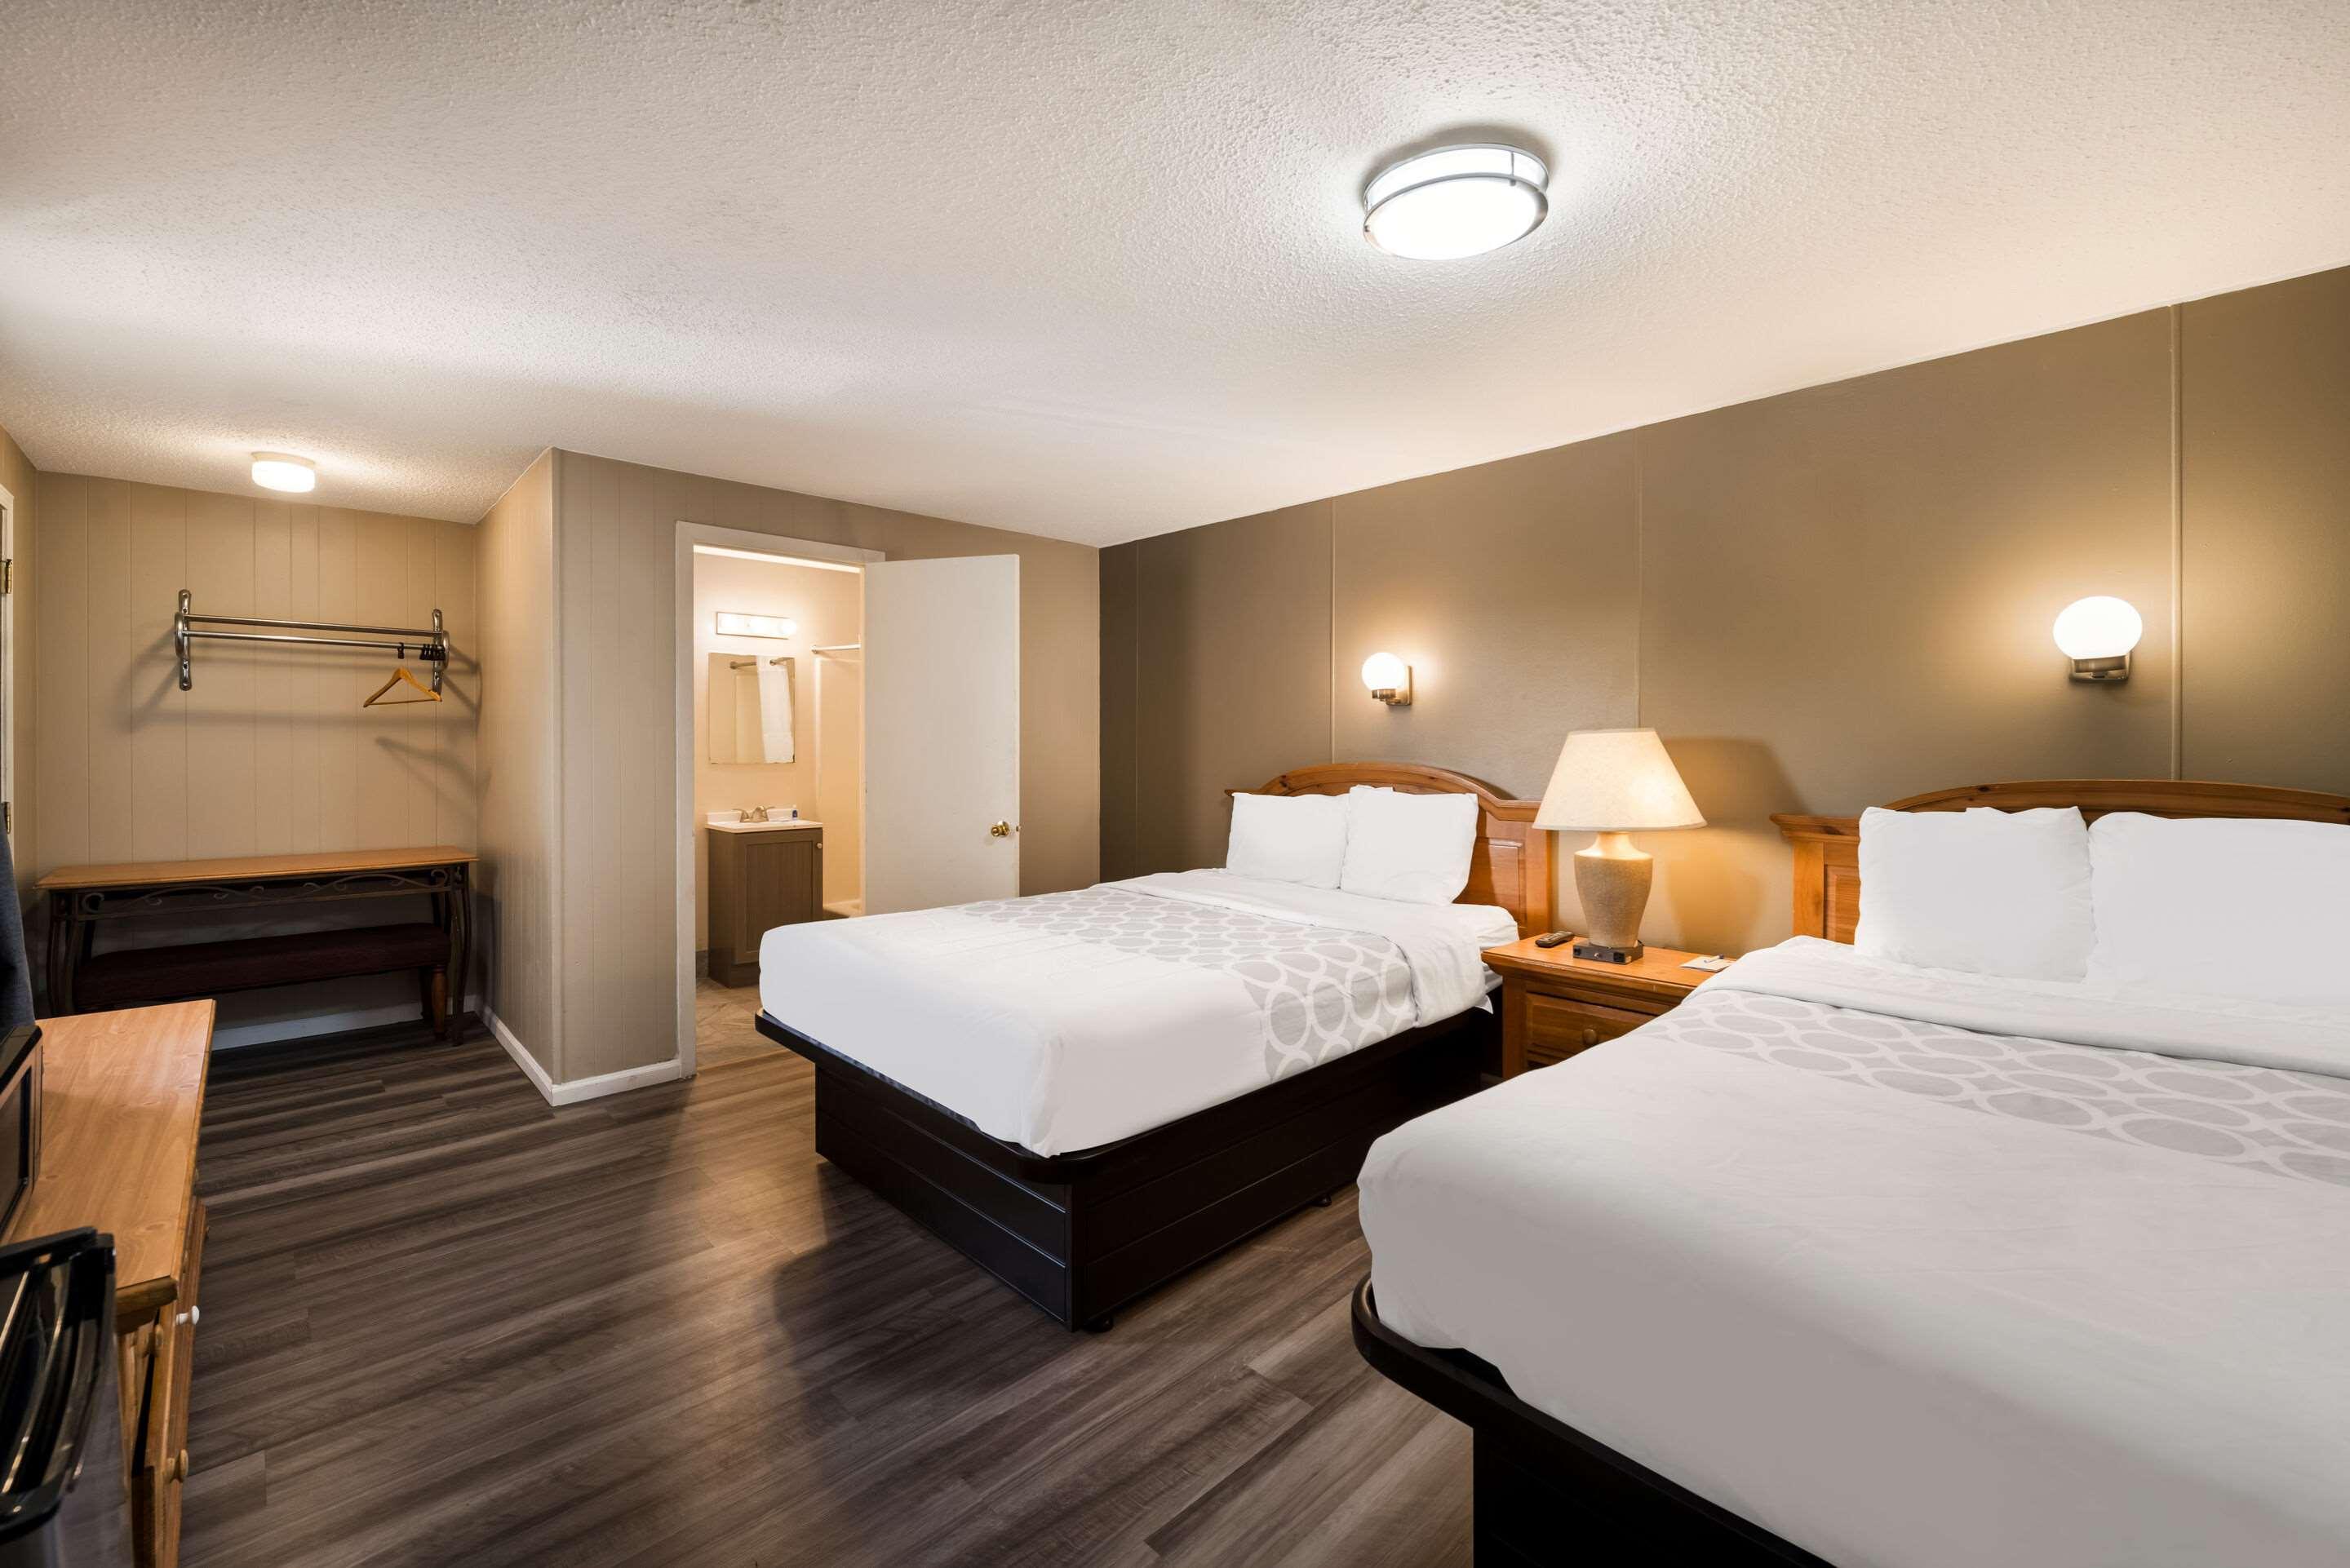 Rodeway Inn from $68. Prescott Hotel Deals & Reviews - KAYAK